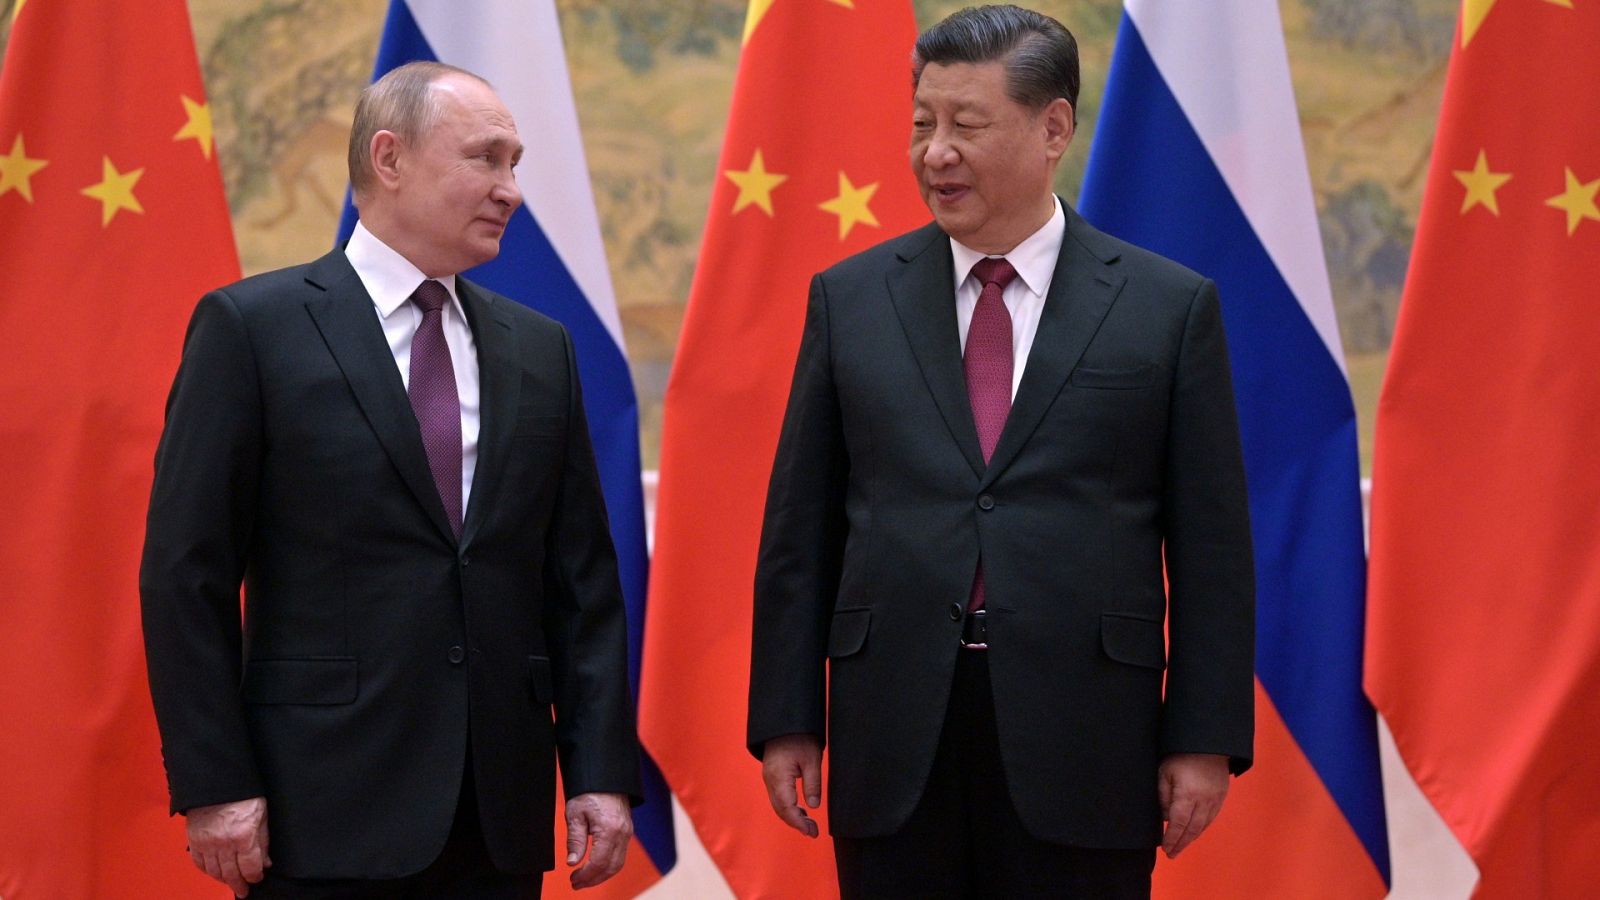 El presidente ruso, Vladímir Putin y su homólogo chino, Xi Jinping, durante una reunión celebrada el 4 de febrero en Pekín